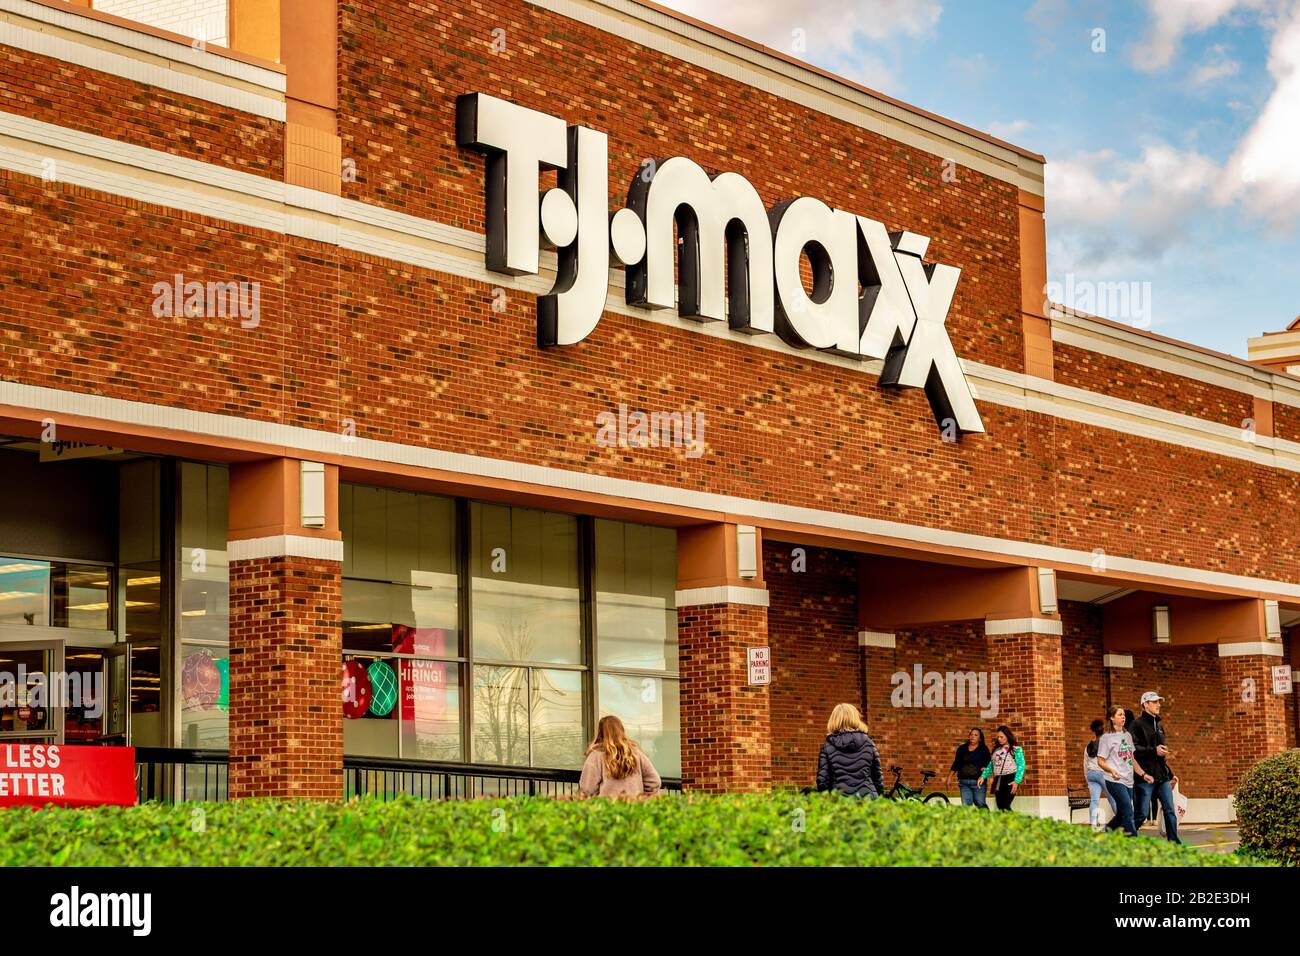 Charlotte, NC/USA - 14. Dezember 2019: Mittlere horizontale Nahaufnahme von 'T.J. Maxx' Ladenfassade, die eine Marke in auffälligen weißen Buchstaben auf einem Ziegelgebäude zeigt. Stockfoto